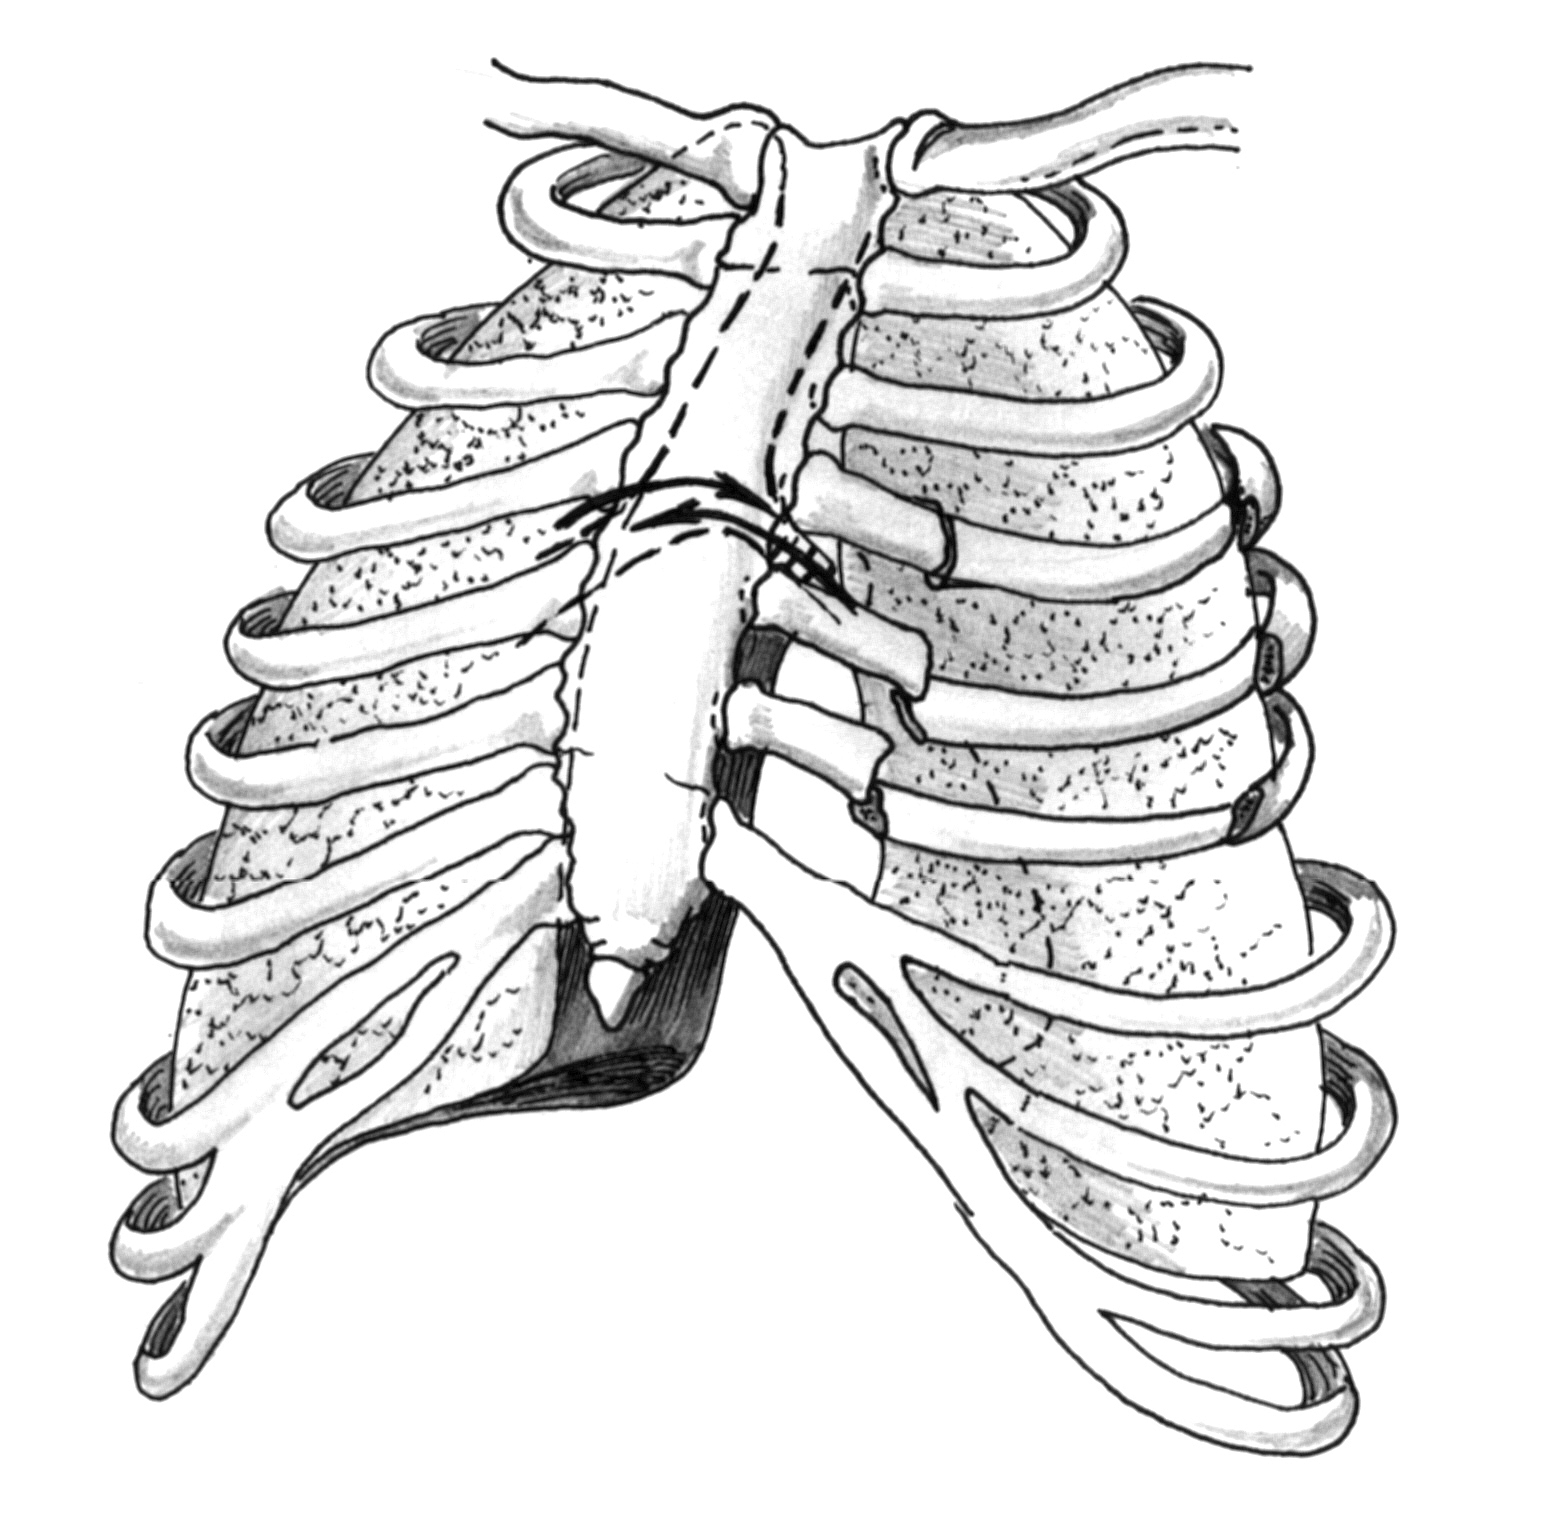 Повреждение легкого ребрами. Перелом ребер грудной клетки. Сегментарный перелом ребра. Перелом грудинного хряща ребра. Неосложненный перелом ребра.